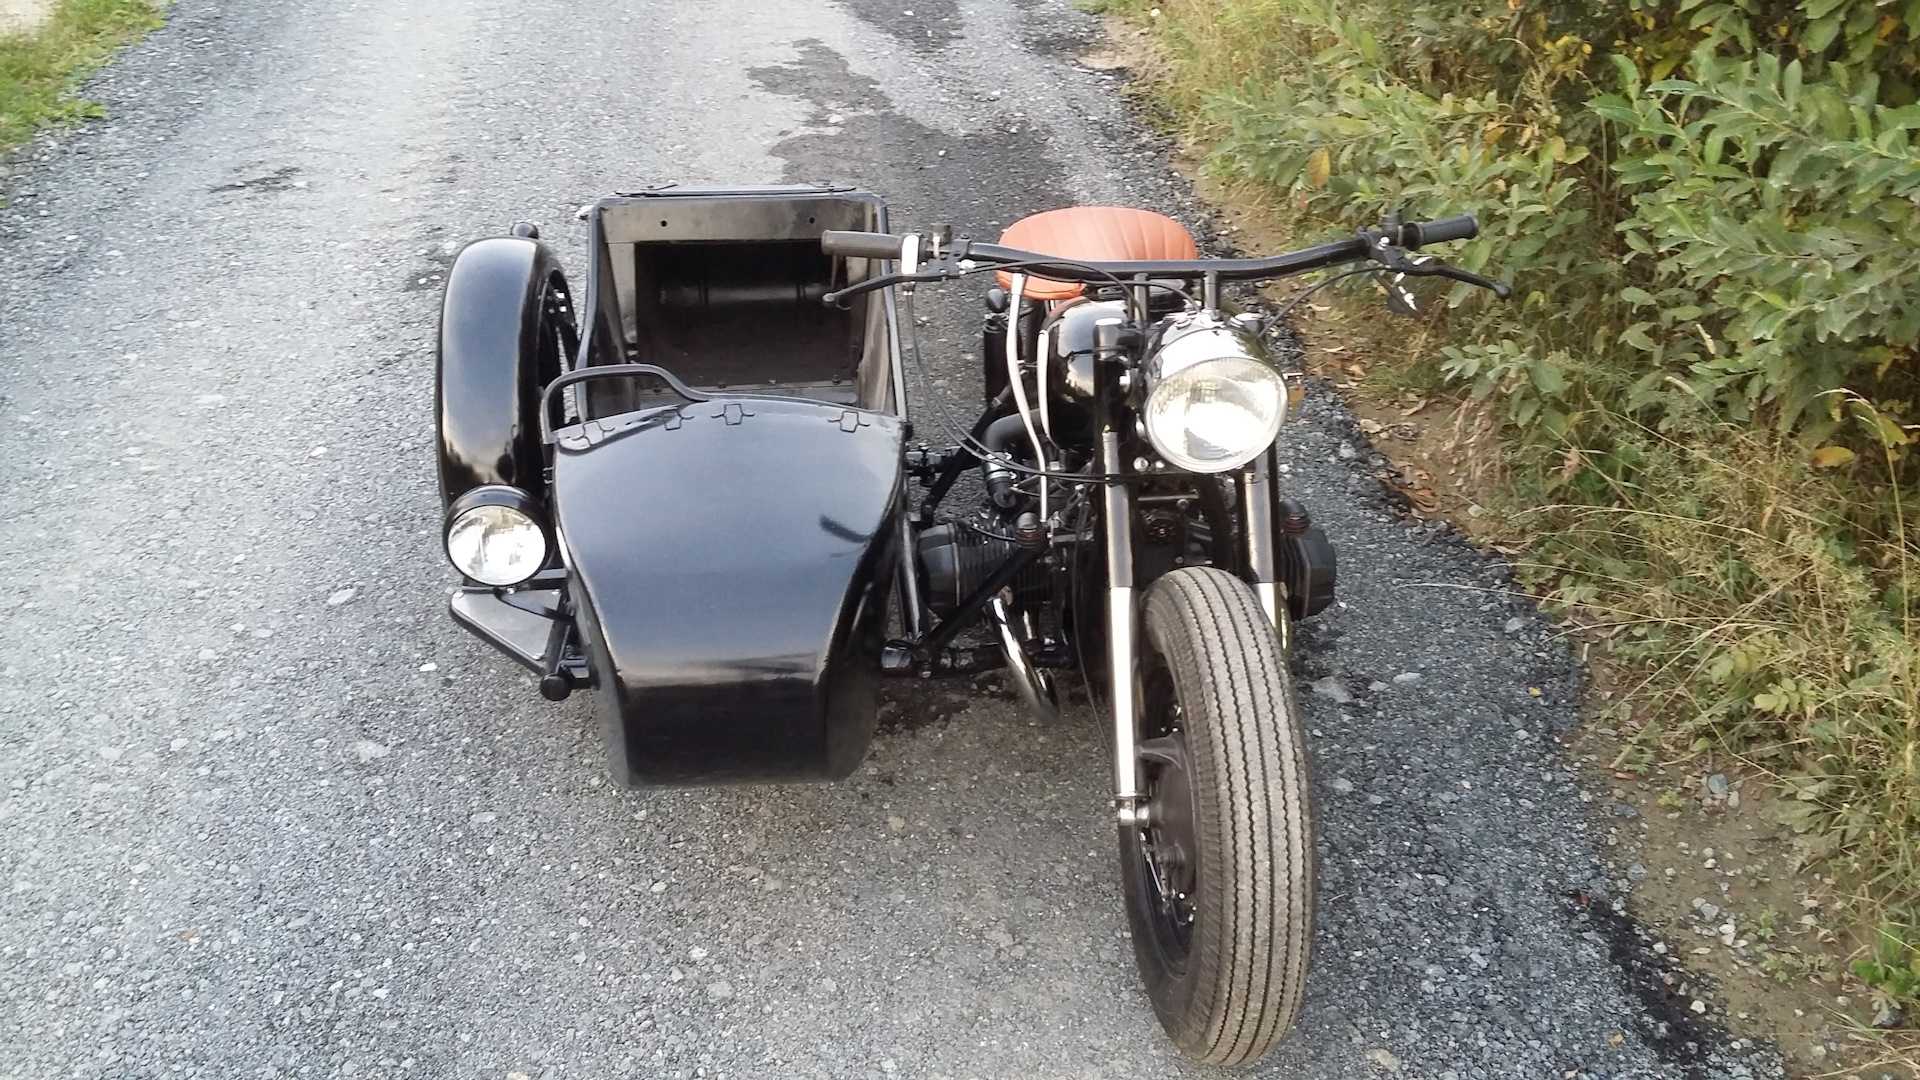 Тюнинг мотоцикла урал с коляской своими руками: фото примеров тюнингованных байков